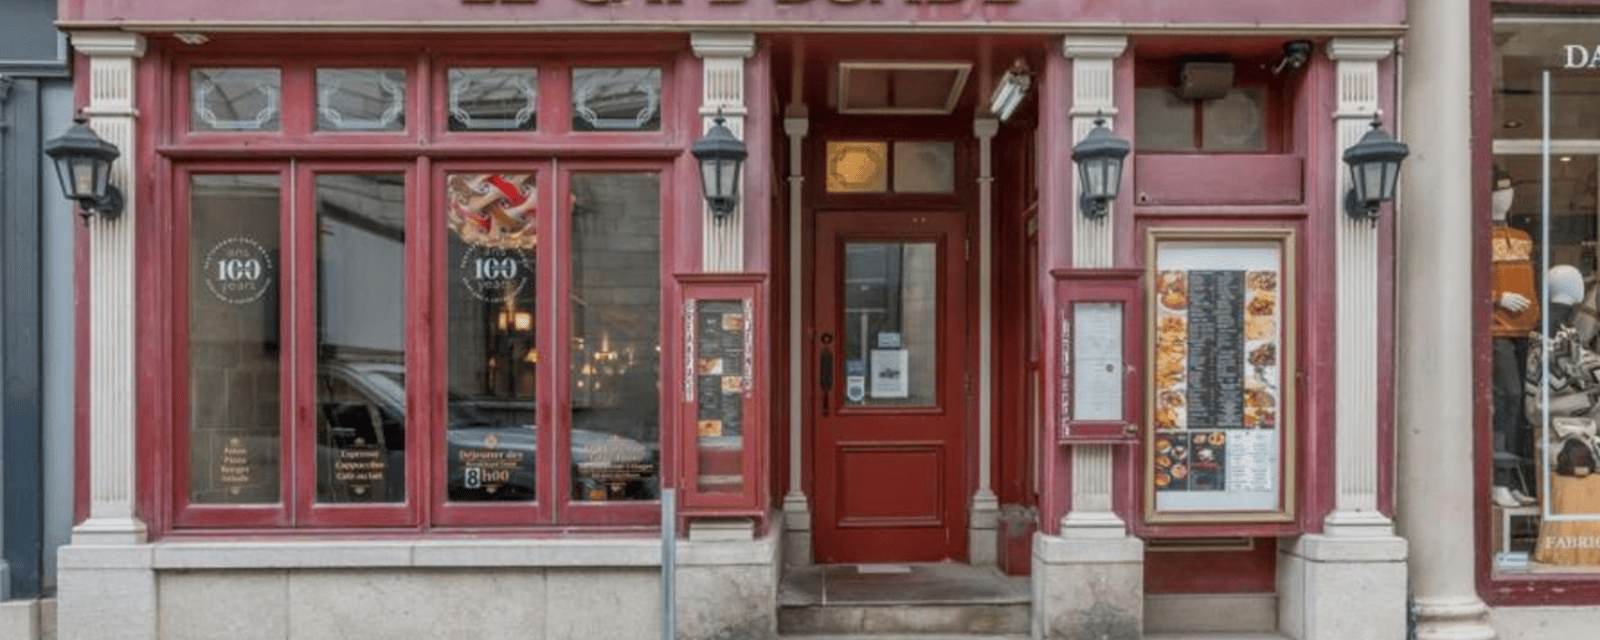 Le plus vieux restaurant de Québec se cherche un nouveau propriétaire